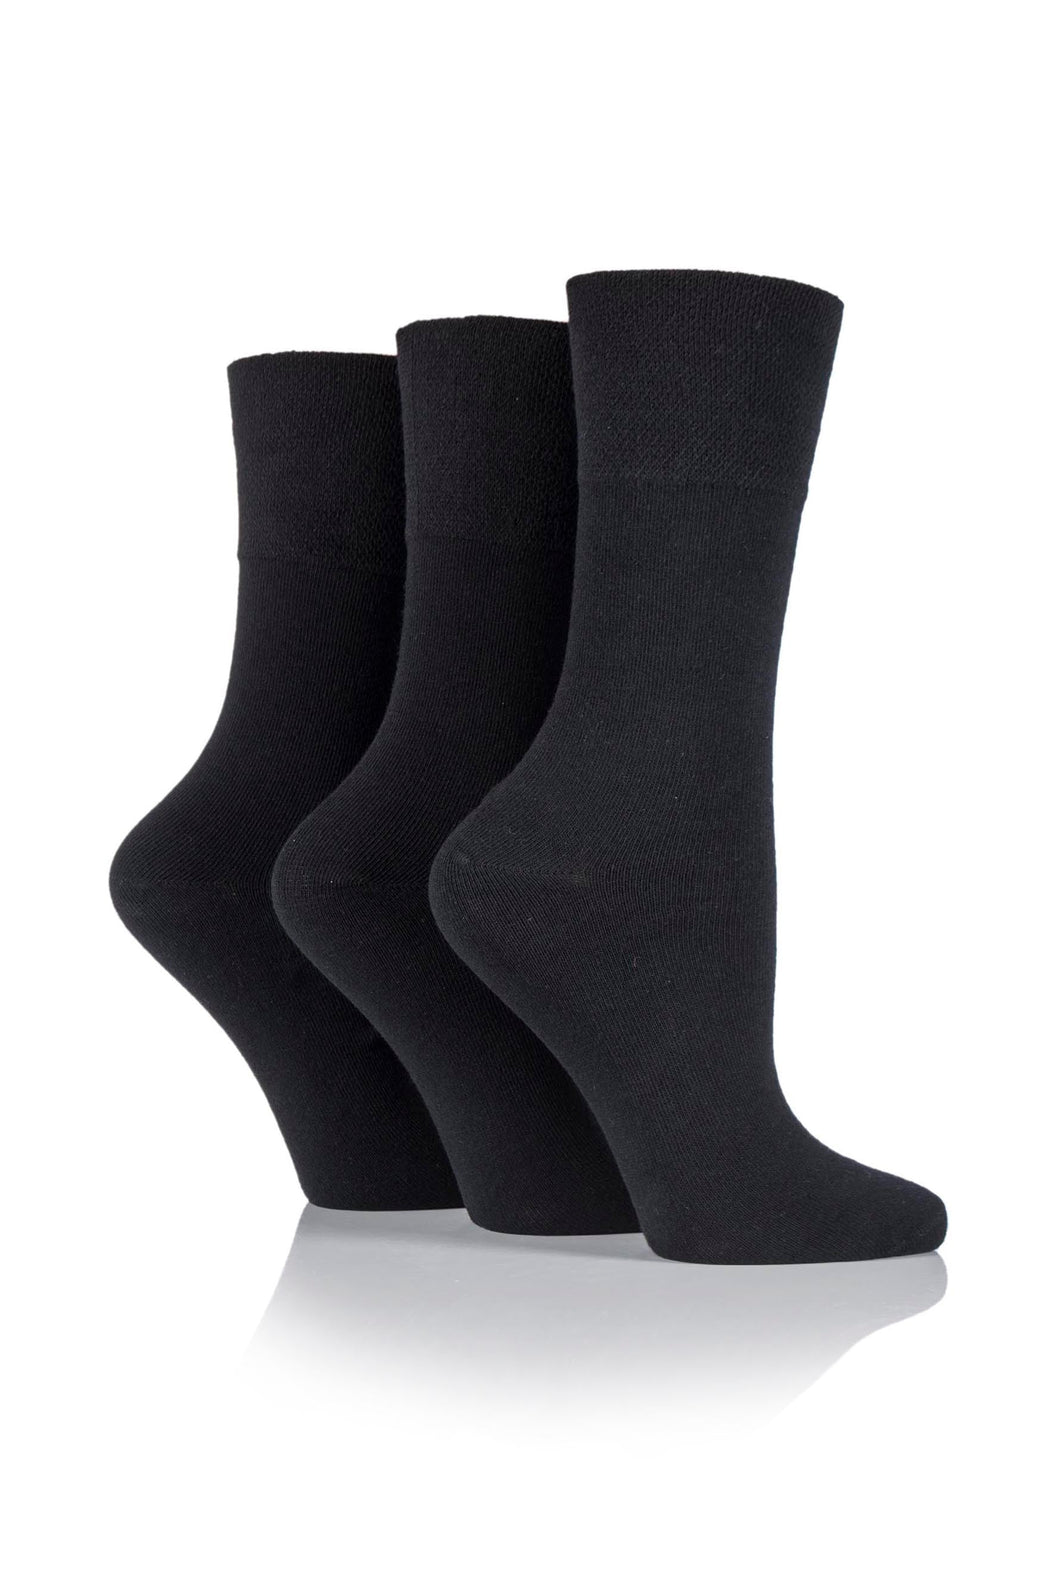 Women's Iomi 3 Pack Footnurse Gentle Grip Diabetic Socks